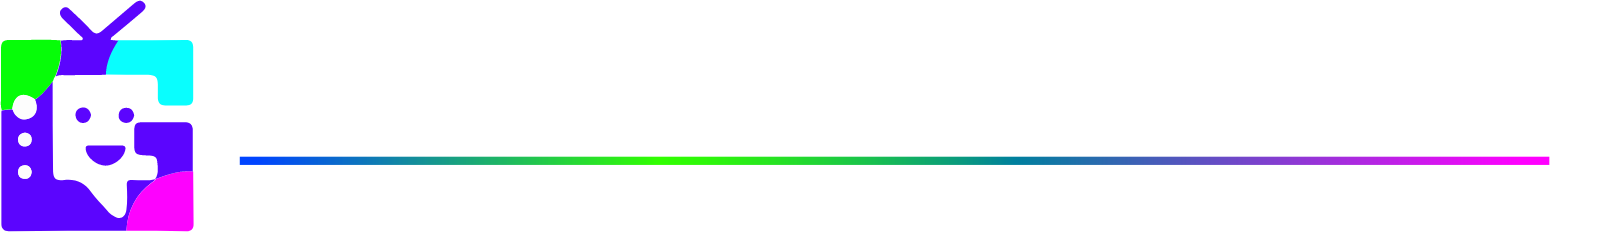 Grom Social Enterprises logo large for dark backgrounds (transparent PNG)